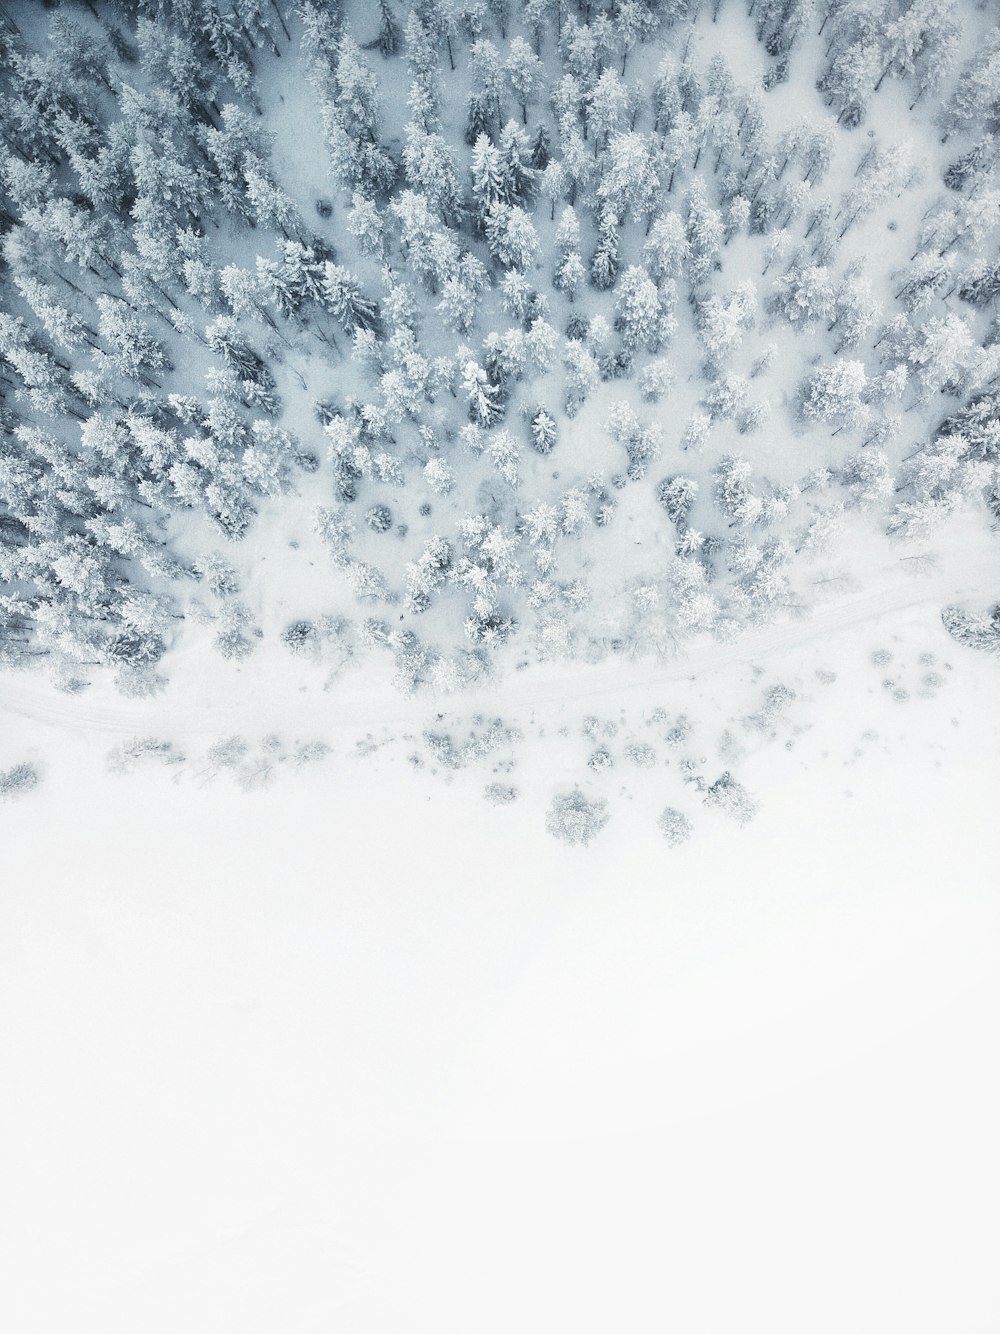 Fondos de nieve: Descarga gratuita en HD [500+ HQ] | Unsplash